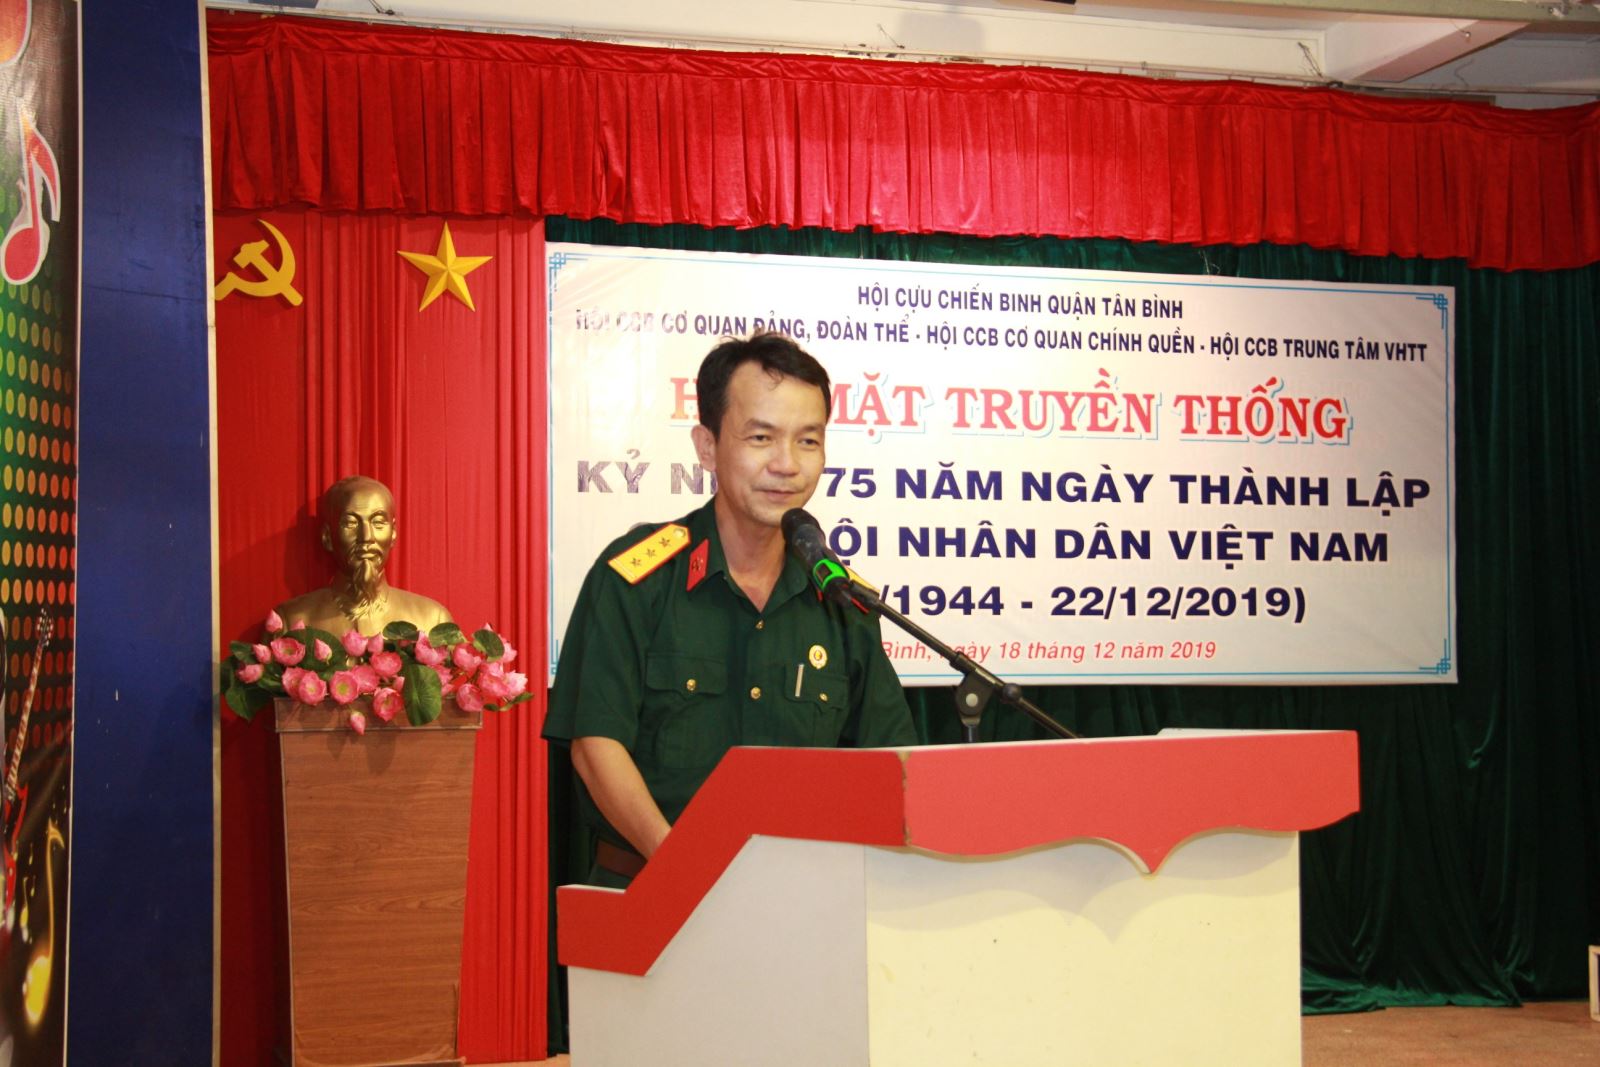 Tổ chức Họp mặt truyền thống kỷ niệm 75 năm Ngày thành lập Quân đội nhân dân Việt Nam